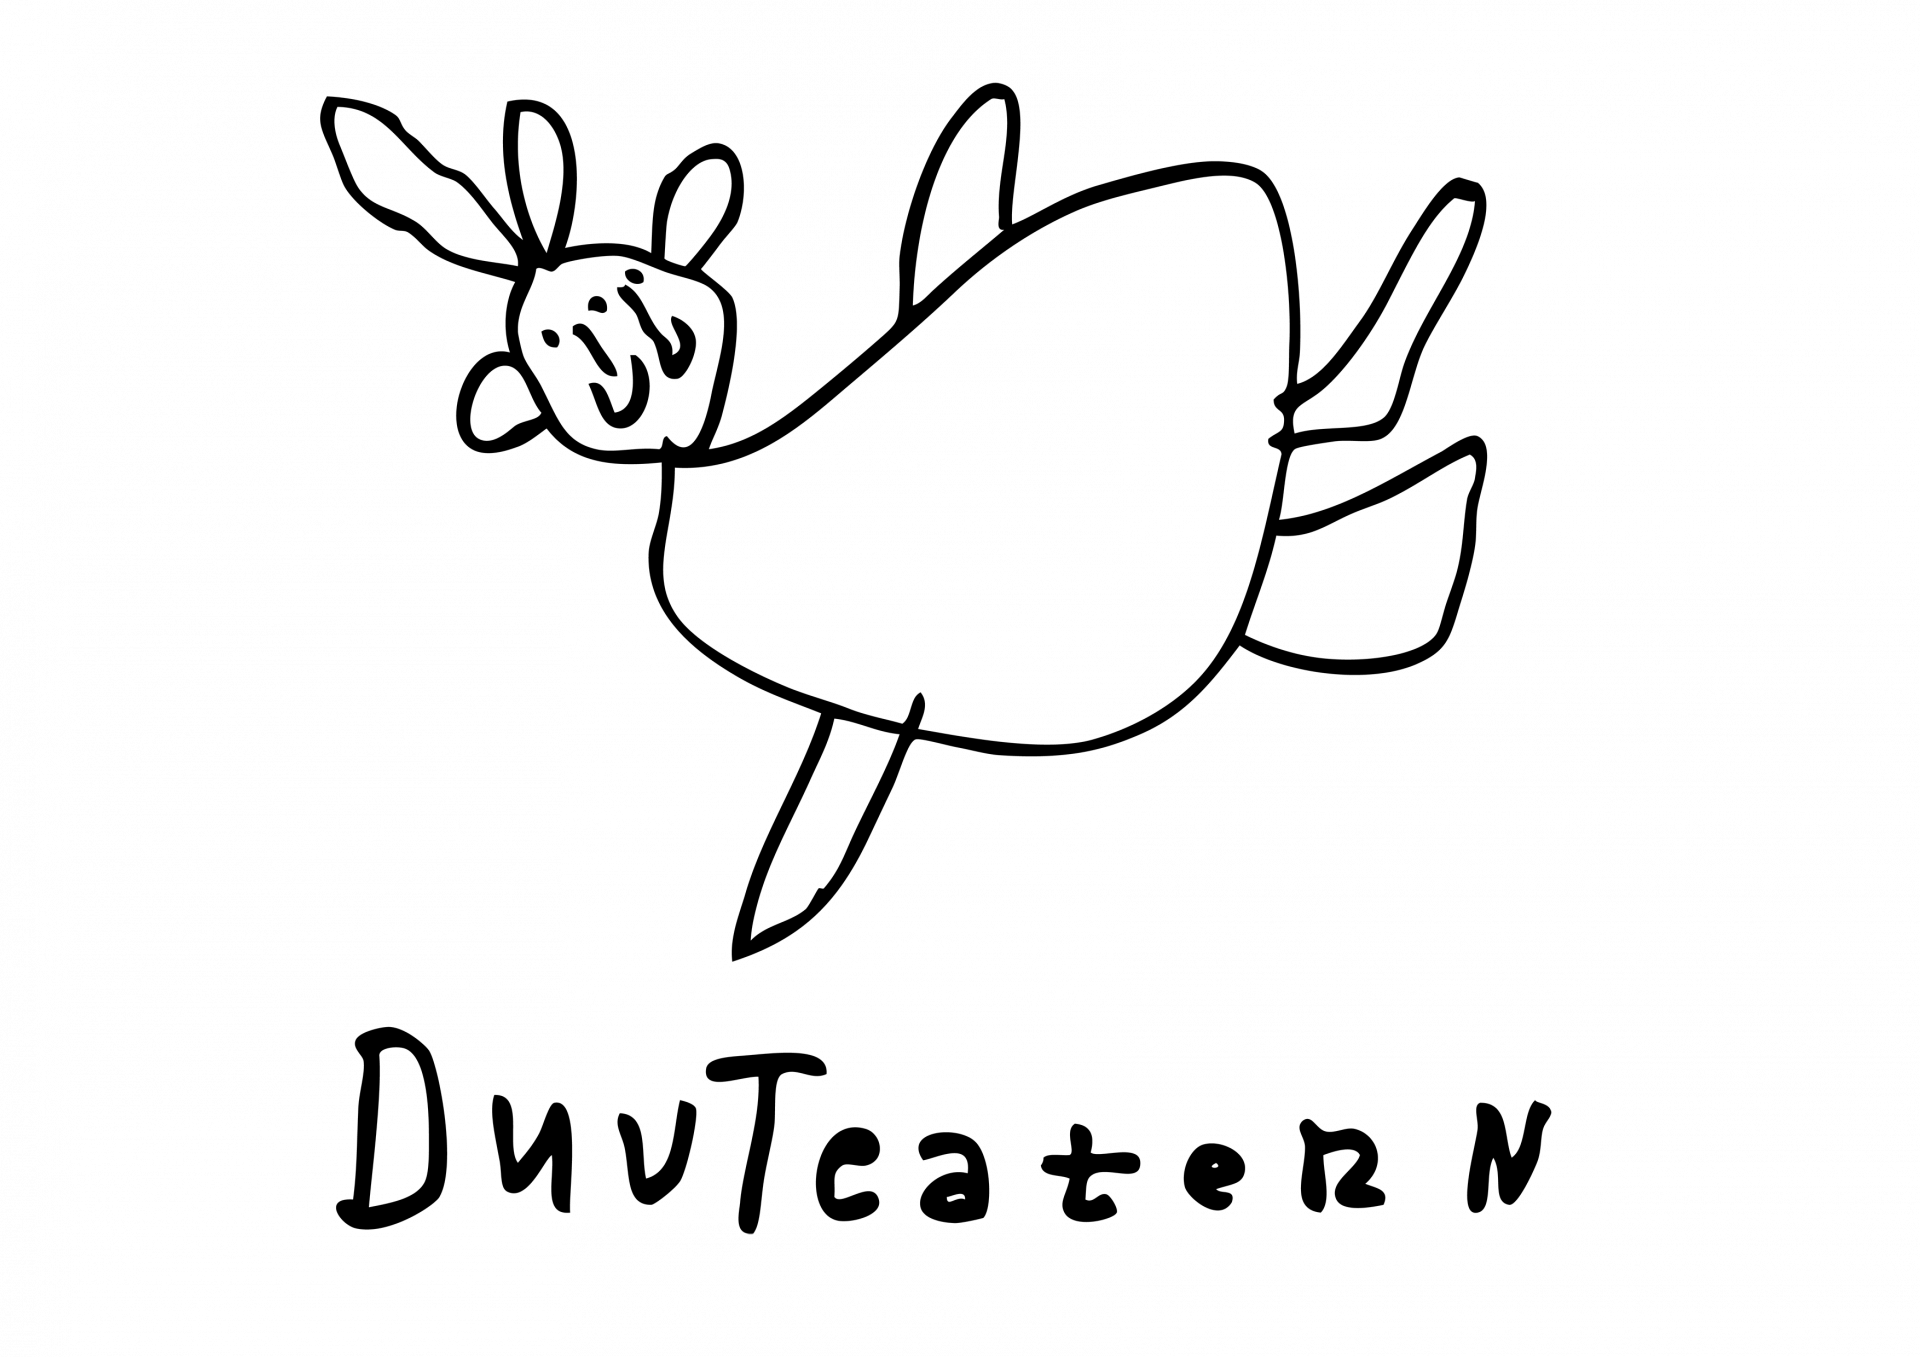 DuvTeaternin logo, jossa piirretty lentävä pulu ja sen alla DuvTeatern käsin kirjoitettuna tekstinä.